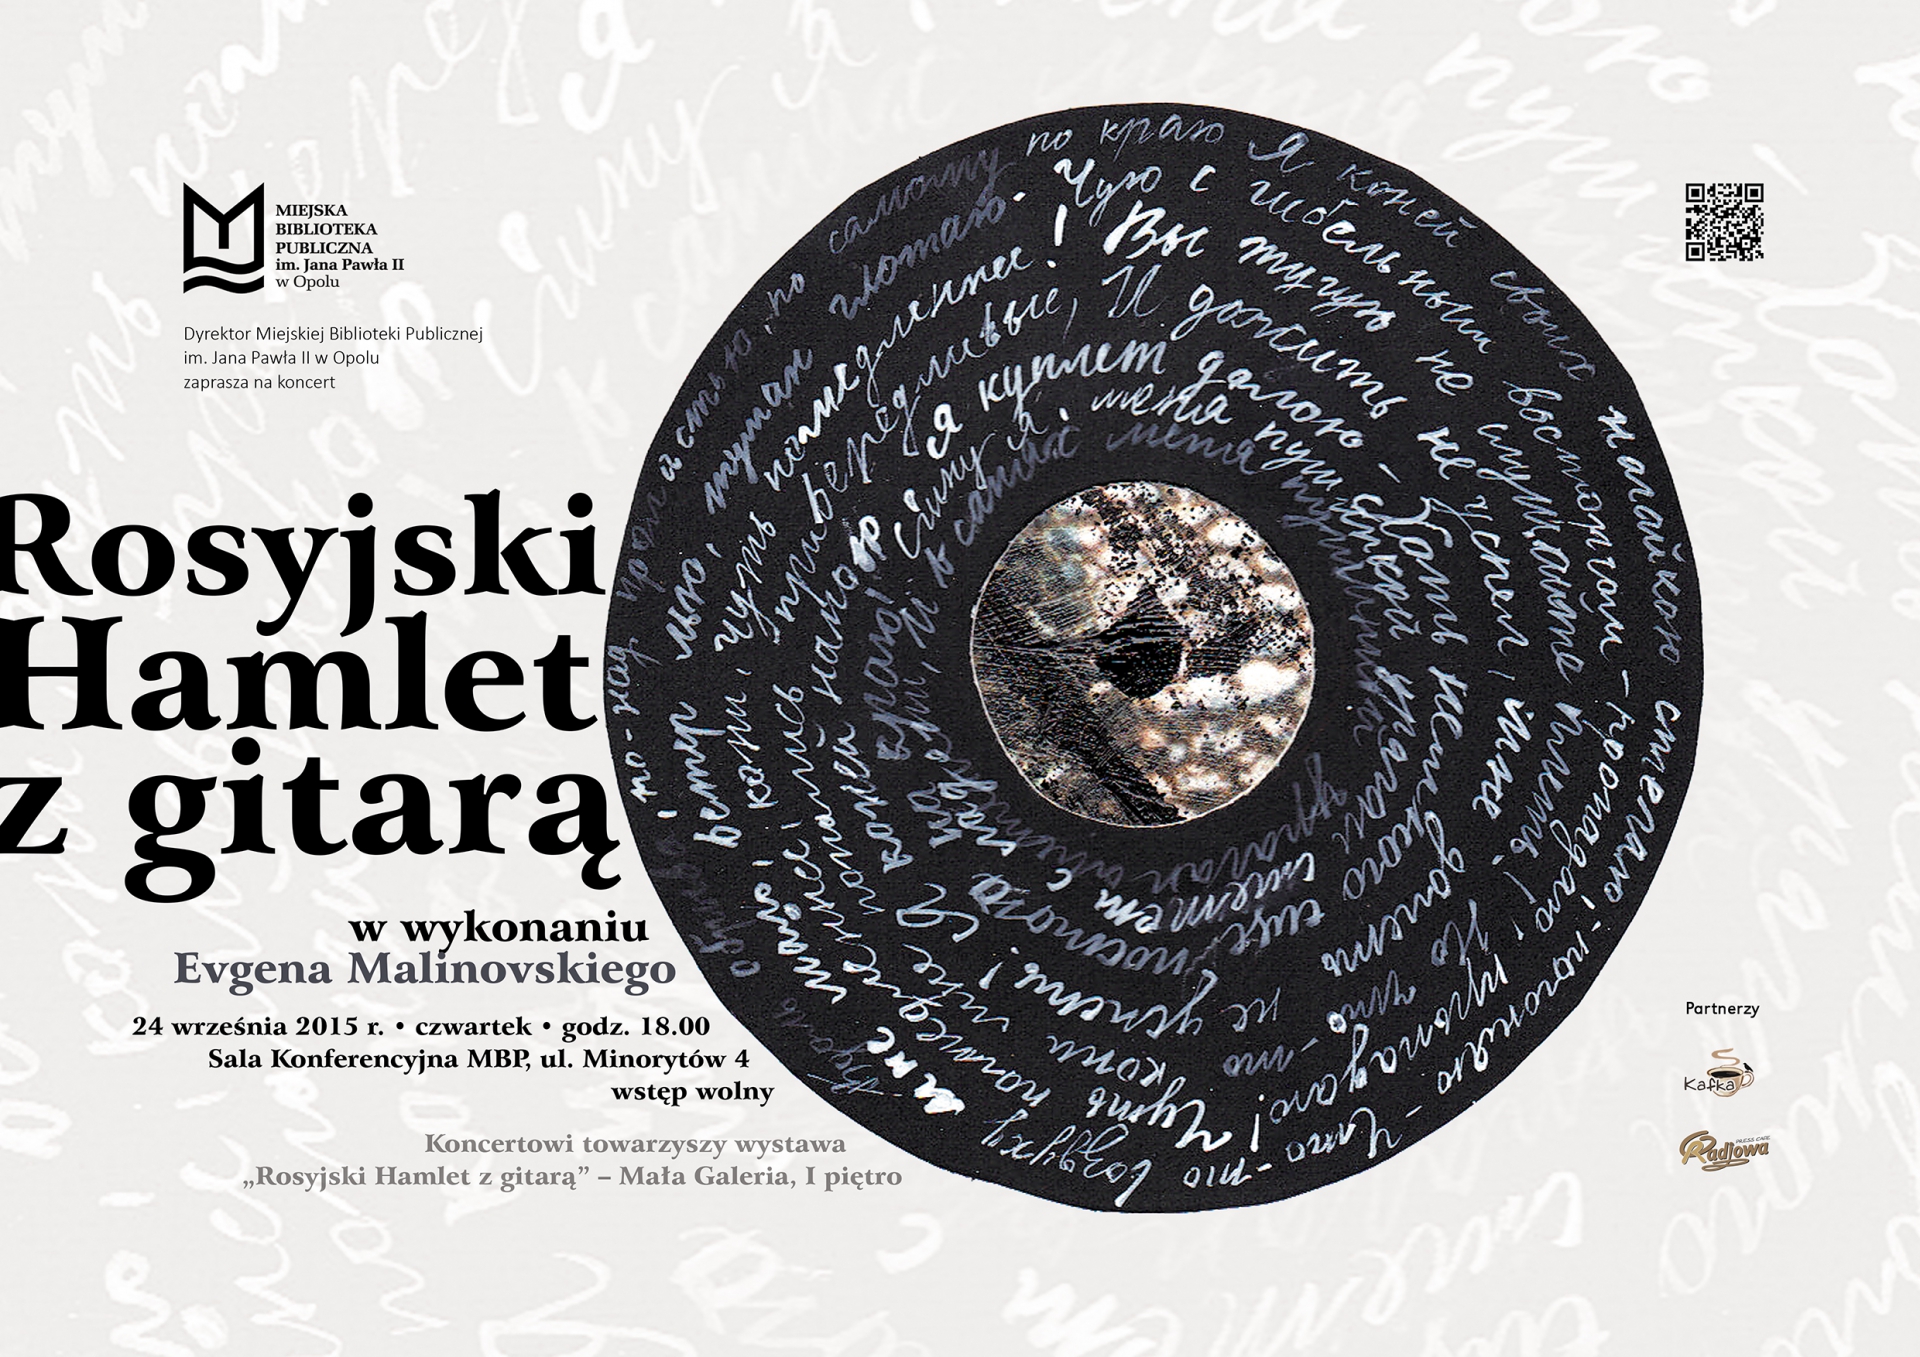 Rosyjski Hamlet z gitarą – koncert pieśni Włodzimierza Wysockiego w wykonaniu Evgena Malinowskiego